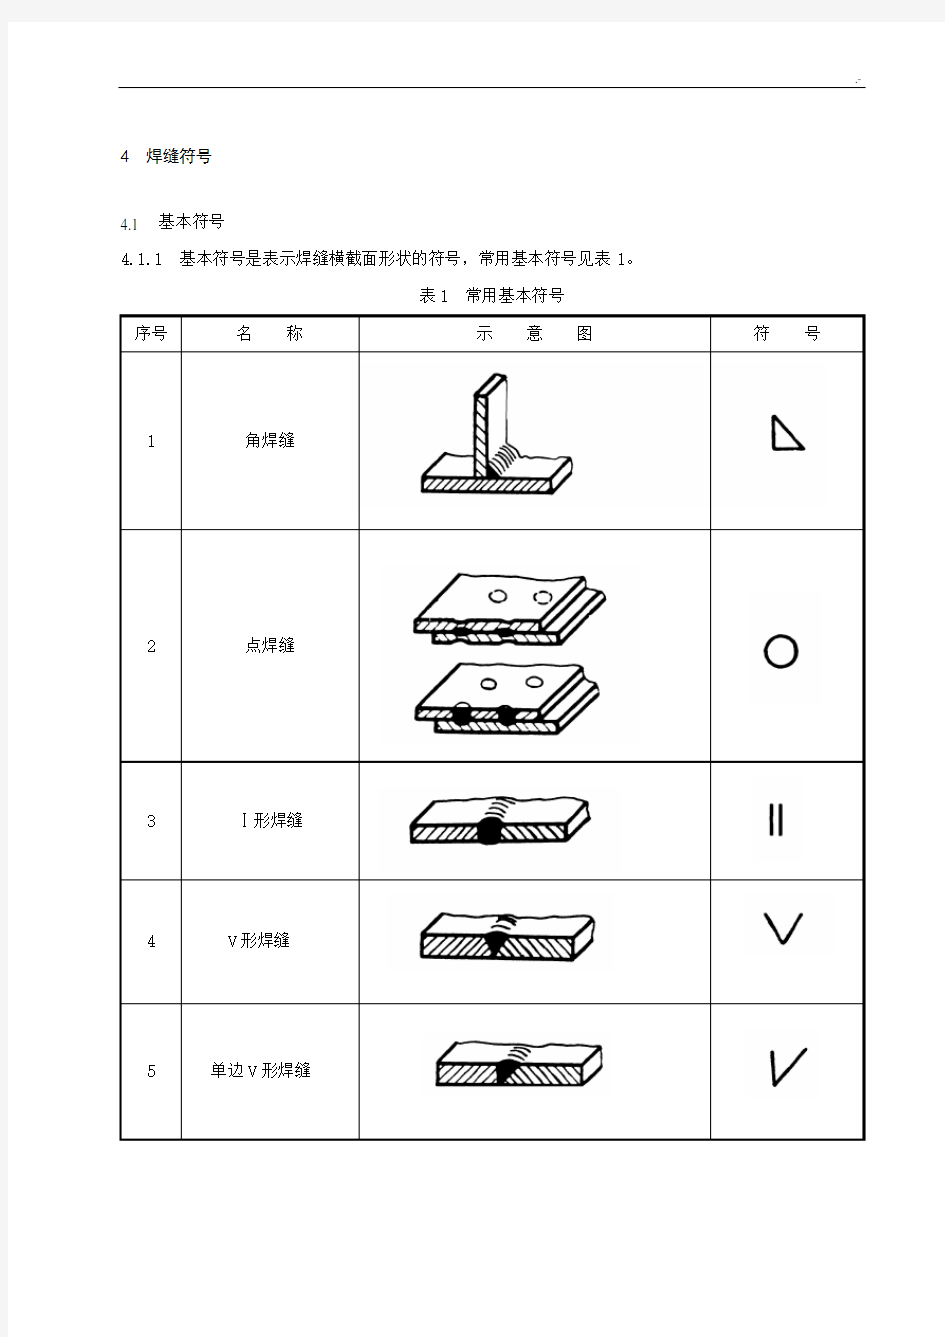 常见焊缝符号表示方法